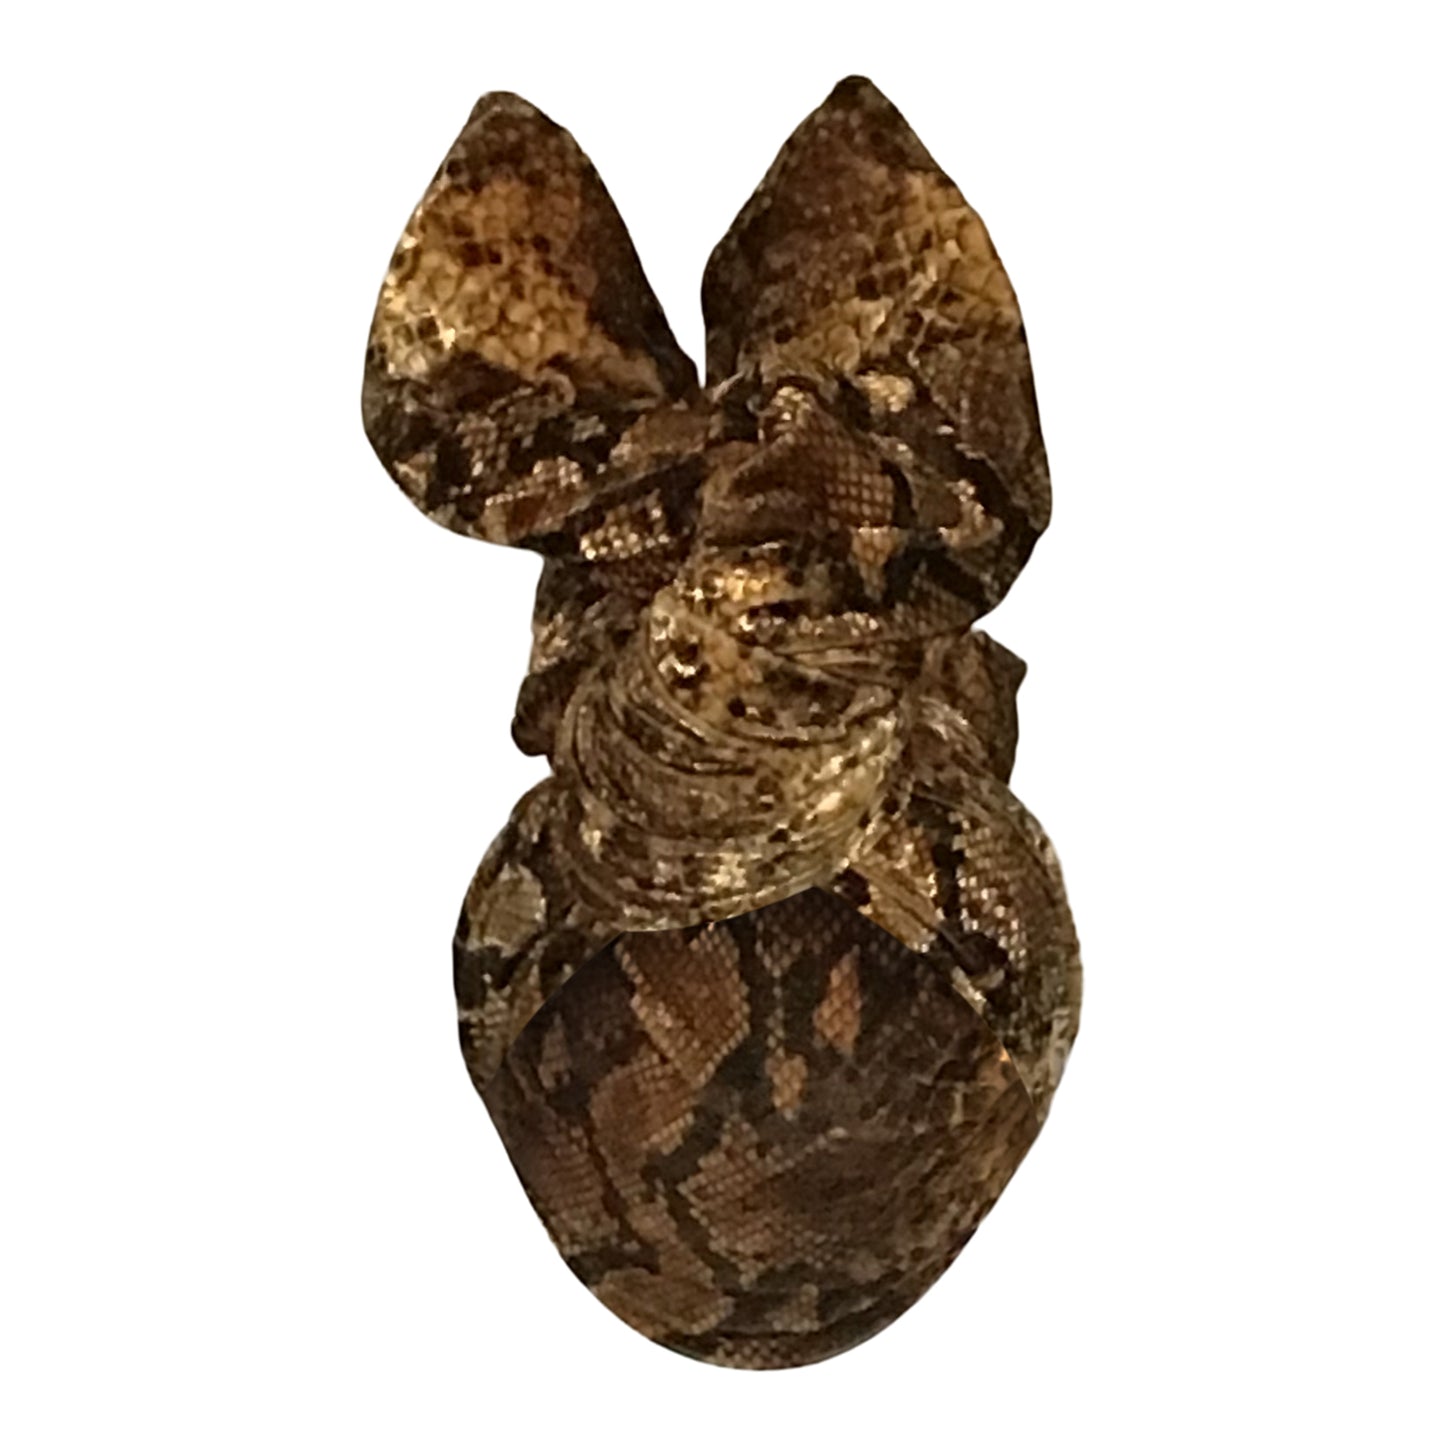 Velvet Twisturban® in brown/ black/ gold python pattern